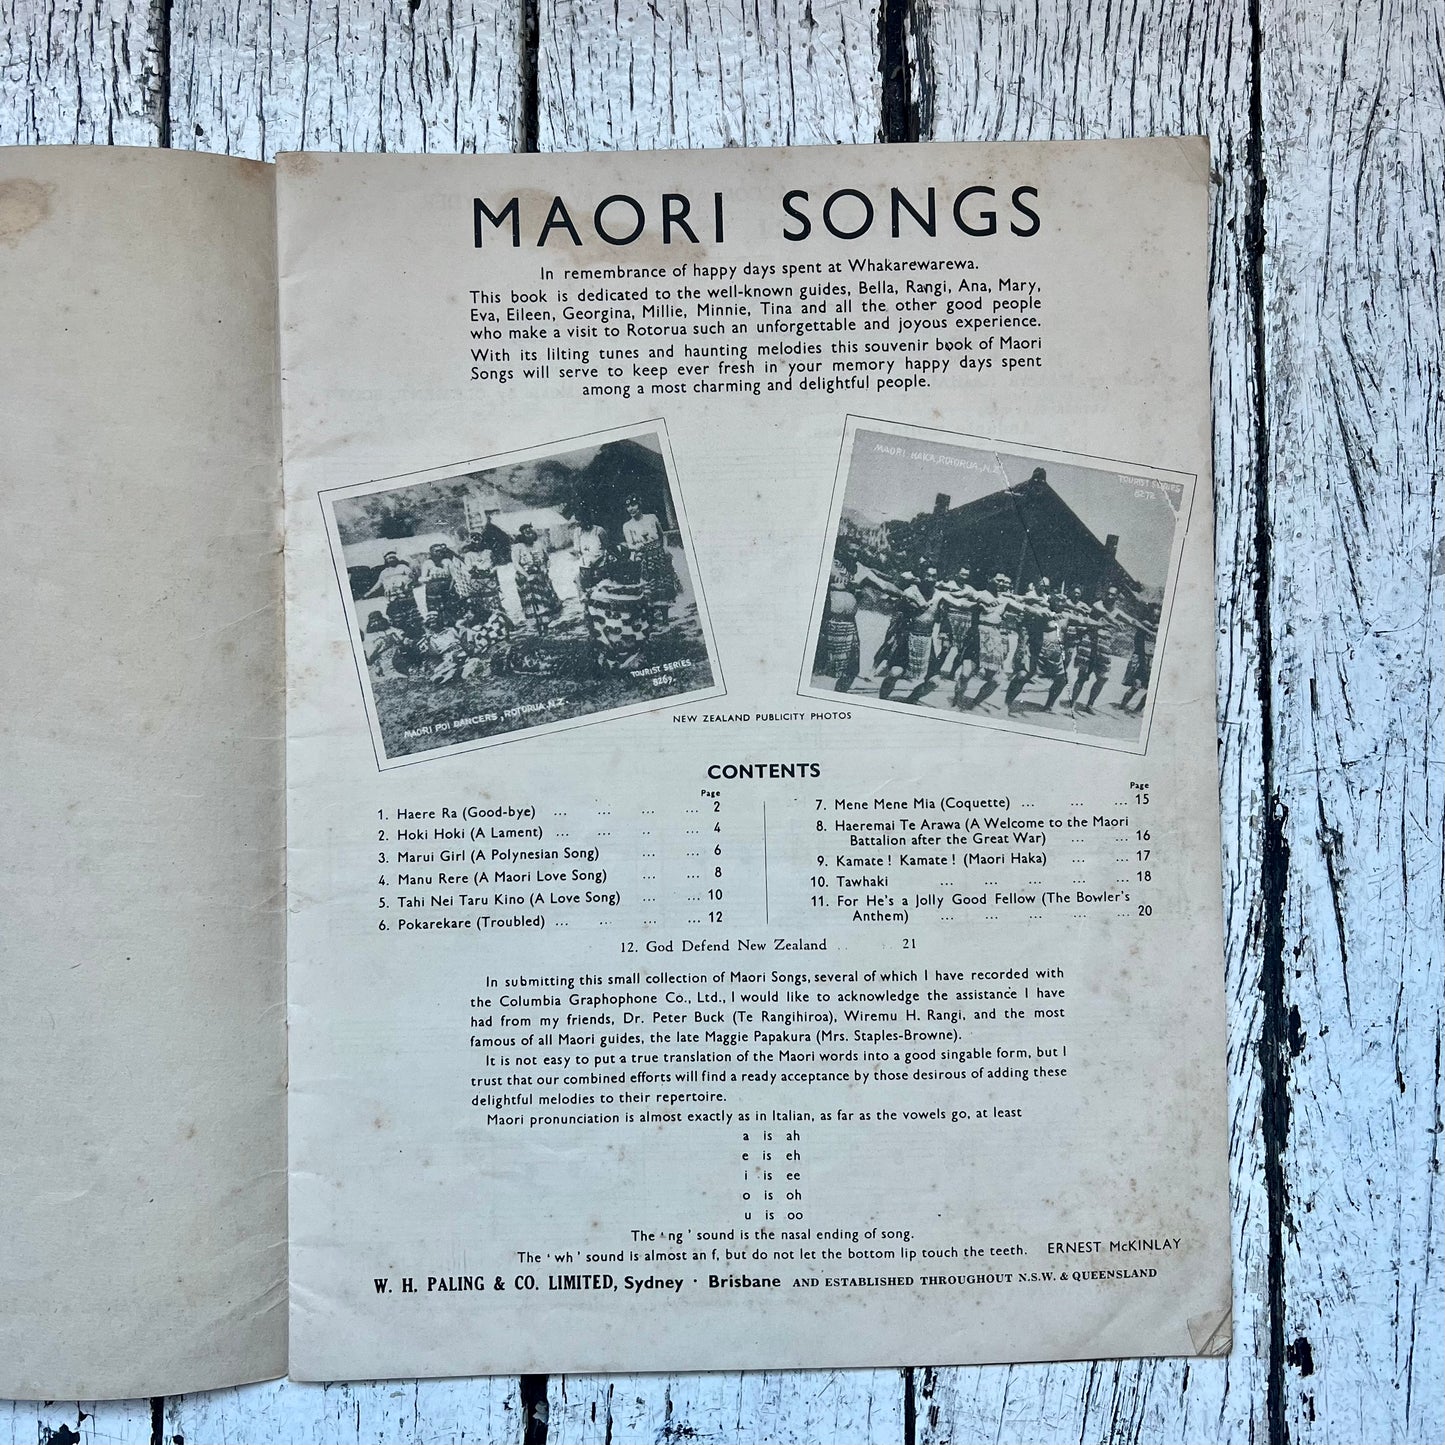 欧内斯特·麦金莱 (1888-1945) 收集并演唱的近乎古董的“毛利歌曲”歌本